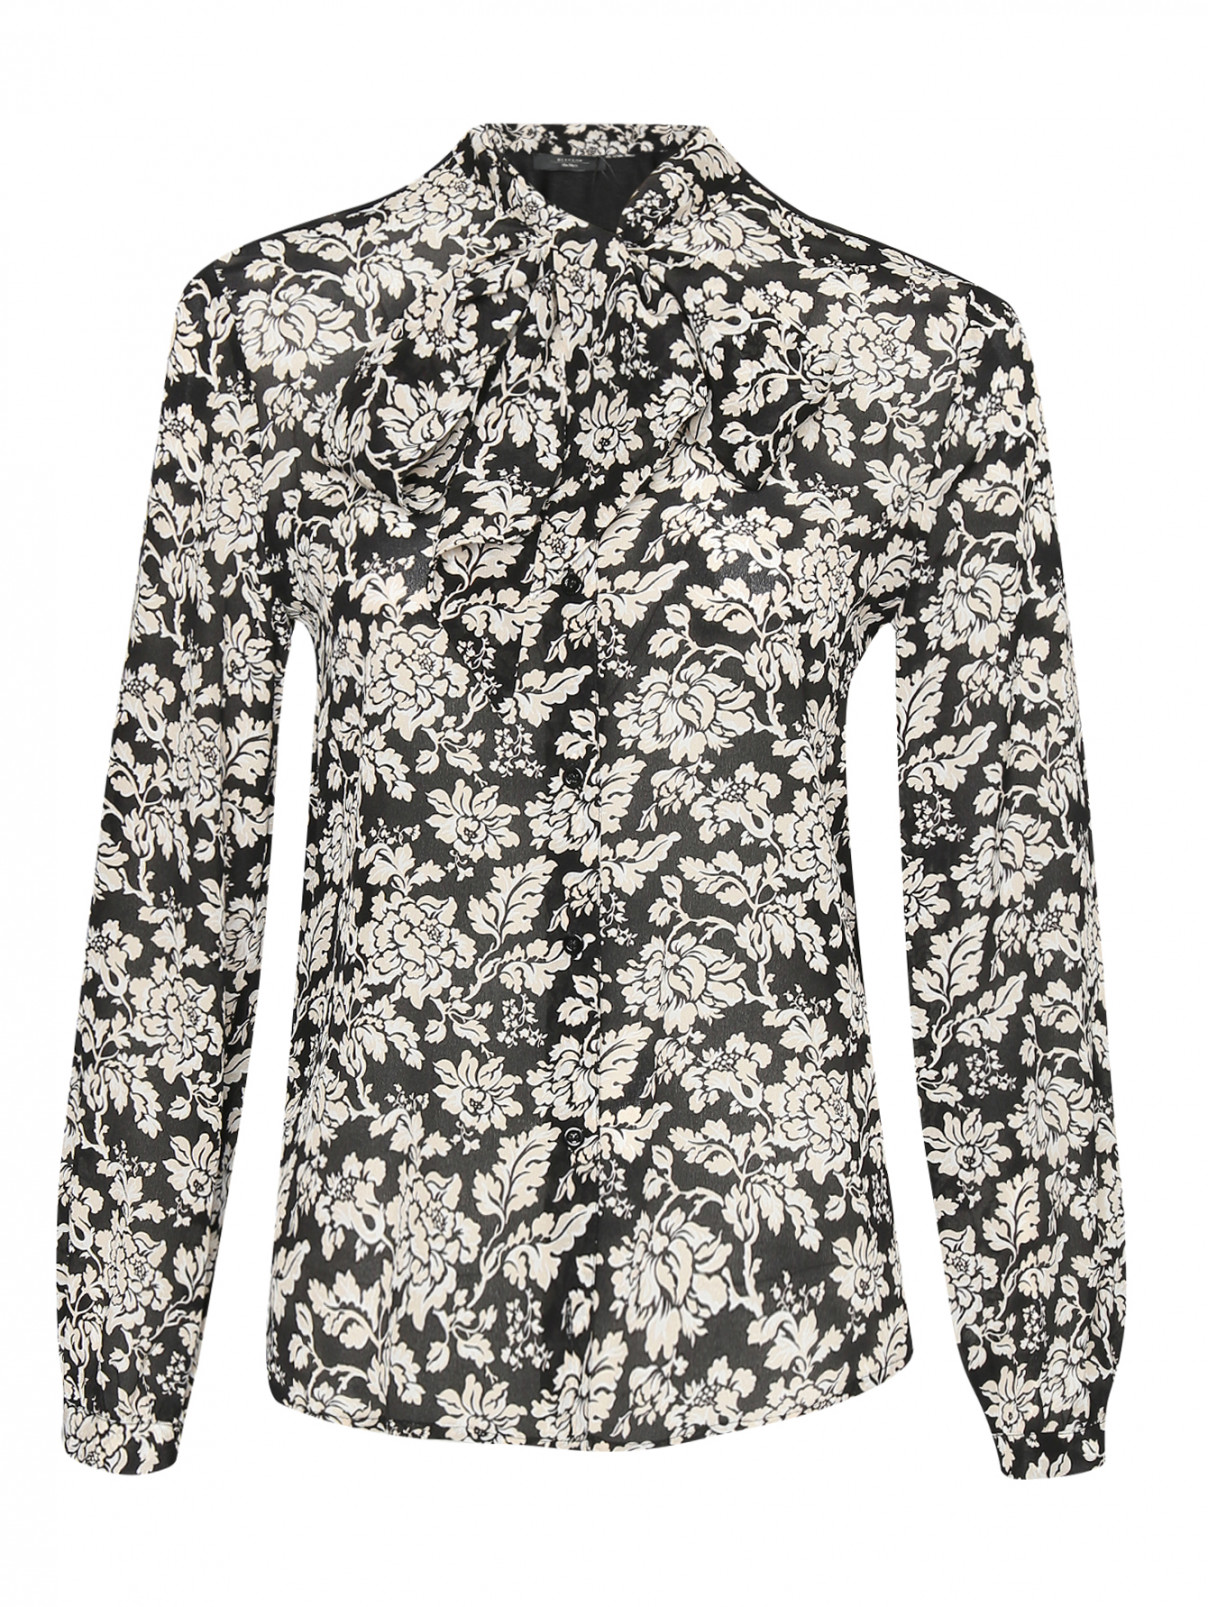 Комбинированная блуза из шелка с узором Weekend Max Mara  –  Общий вид  – Цвет:  Узор